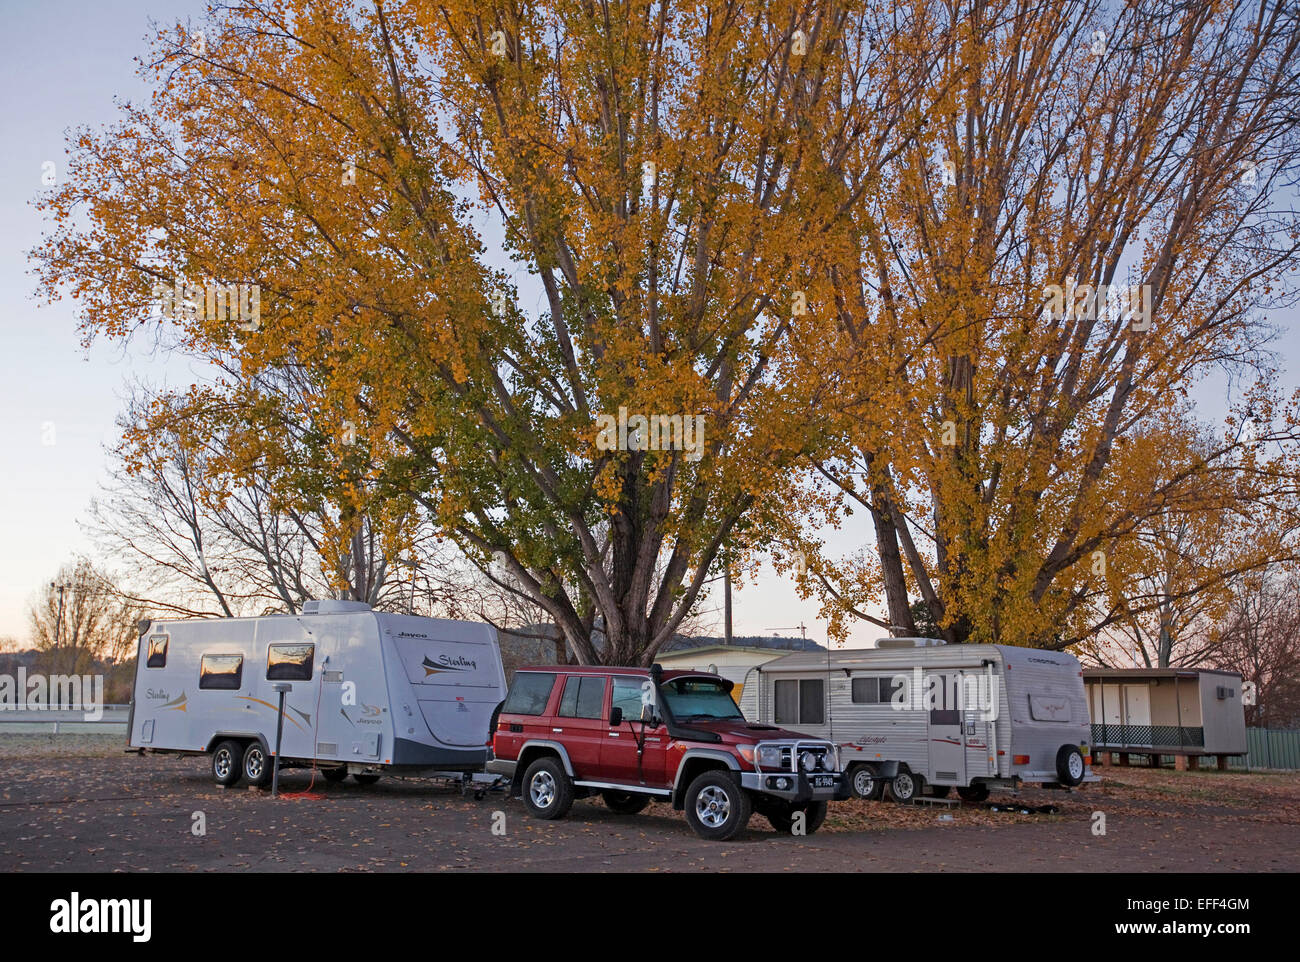 Wohnwagen und rote SUV / Geländewagen Fahrzeug neben große Bäume mit Massen von goldenem Herbstlaub im Caravan Park in Australien Stockfoto